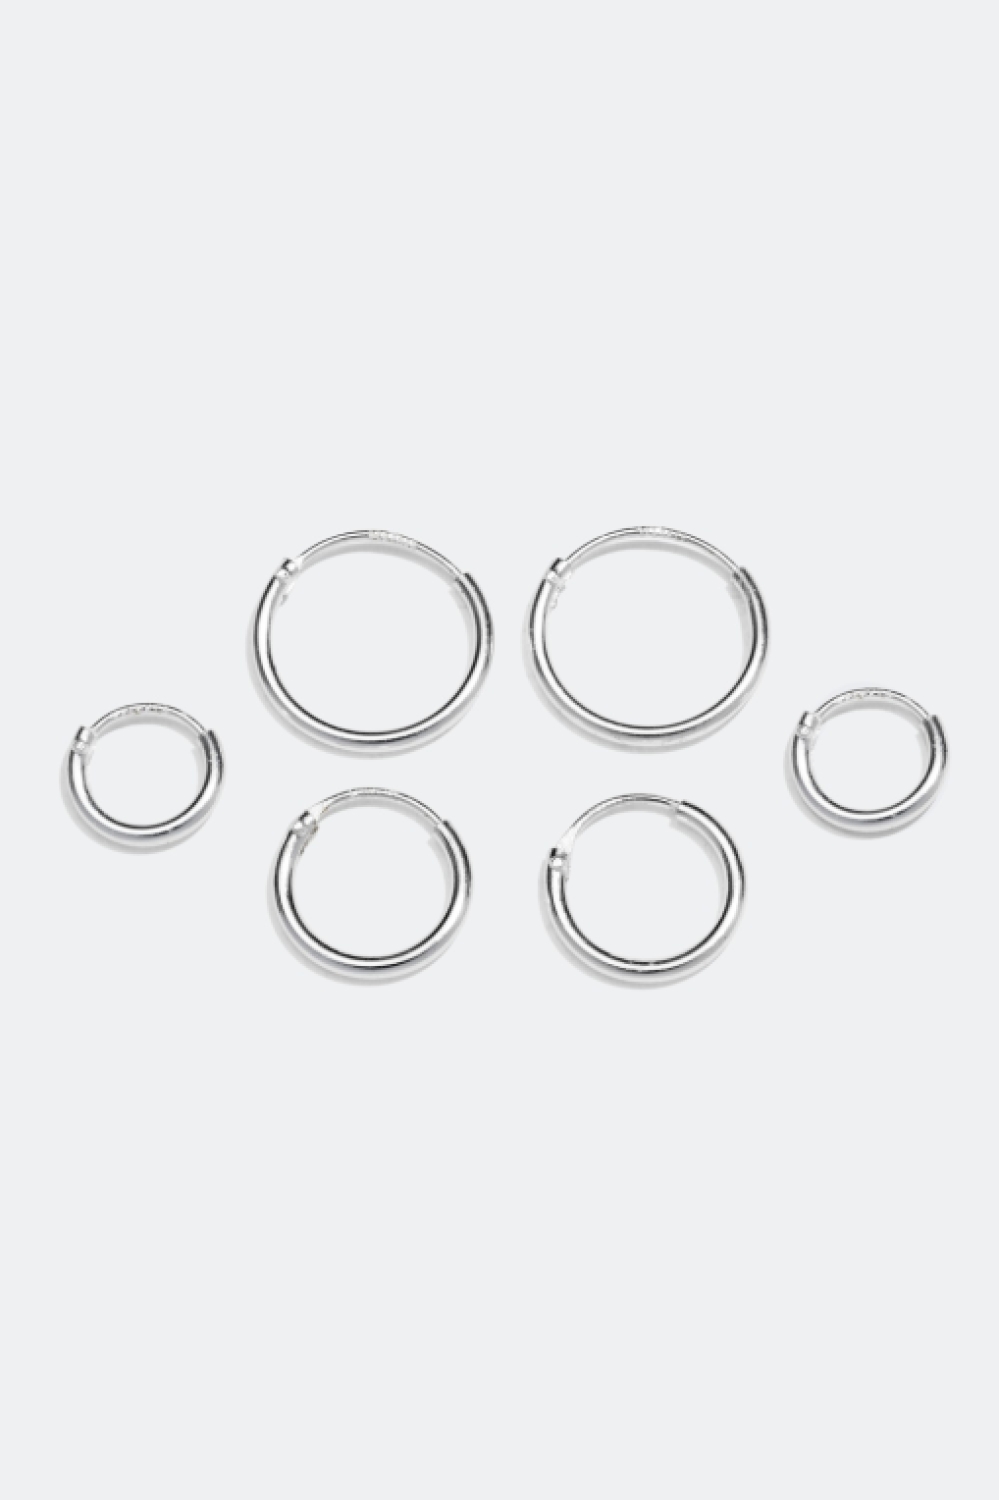 Hoops i äkta silver, 3-pack, 1 cm i gruppen Äkta silver / Silverörhängen / Hoops i äkta silver hos Glitter (307411011000)